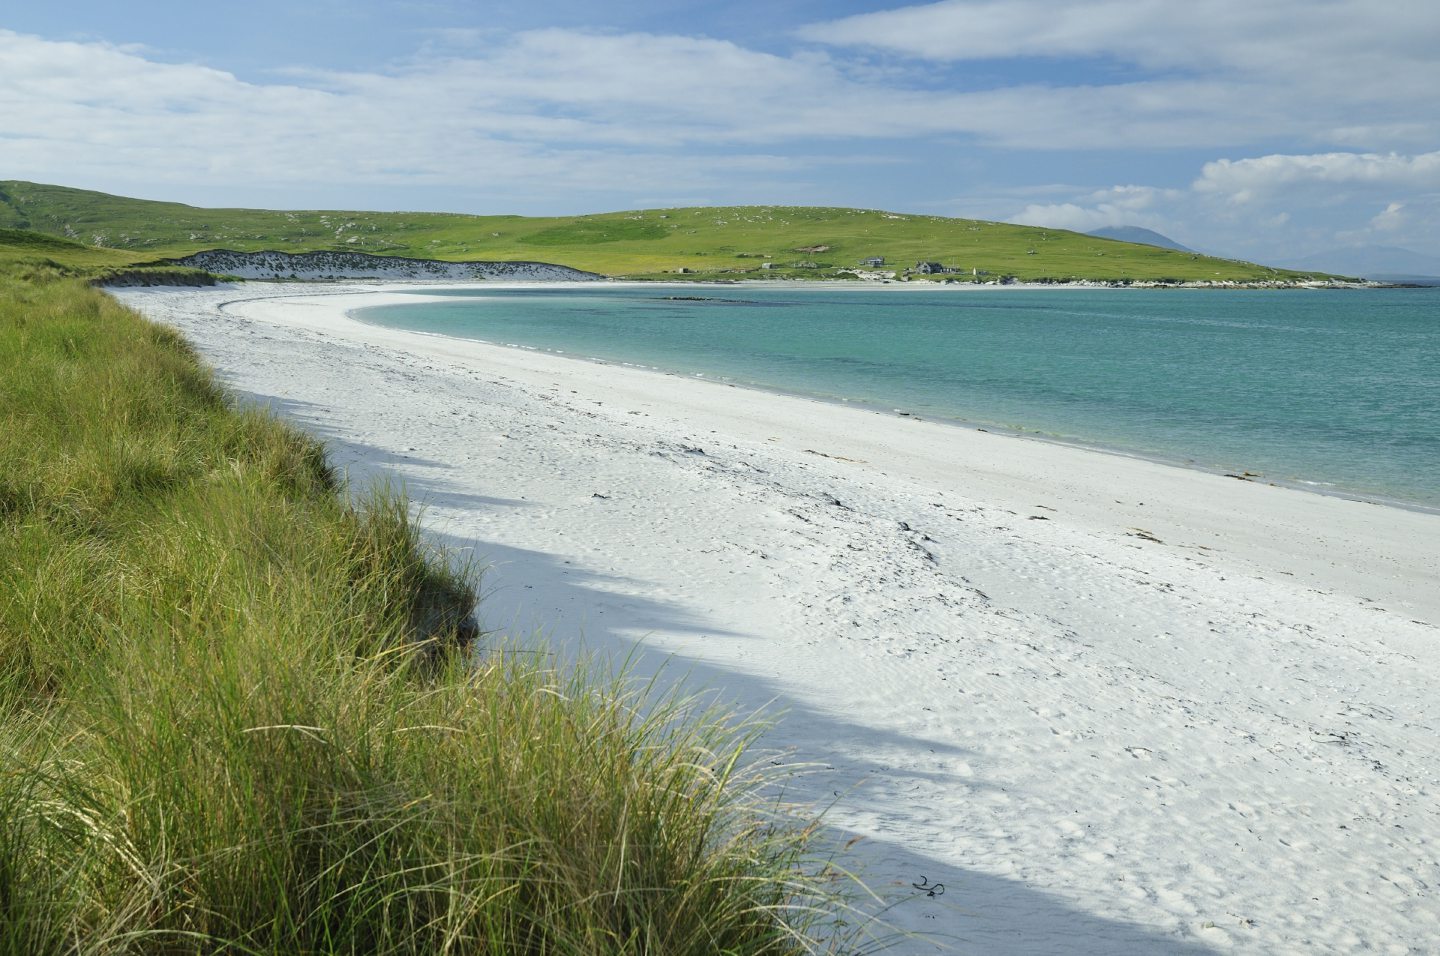 Η παραλία Berneray είναι μια από τις καλύτερες της Ευρώπης, όπως η ακτογραμμή Outer Hebrides στην λίστα Lonely Planet